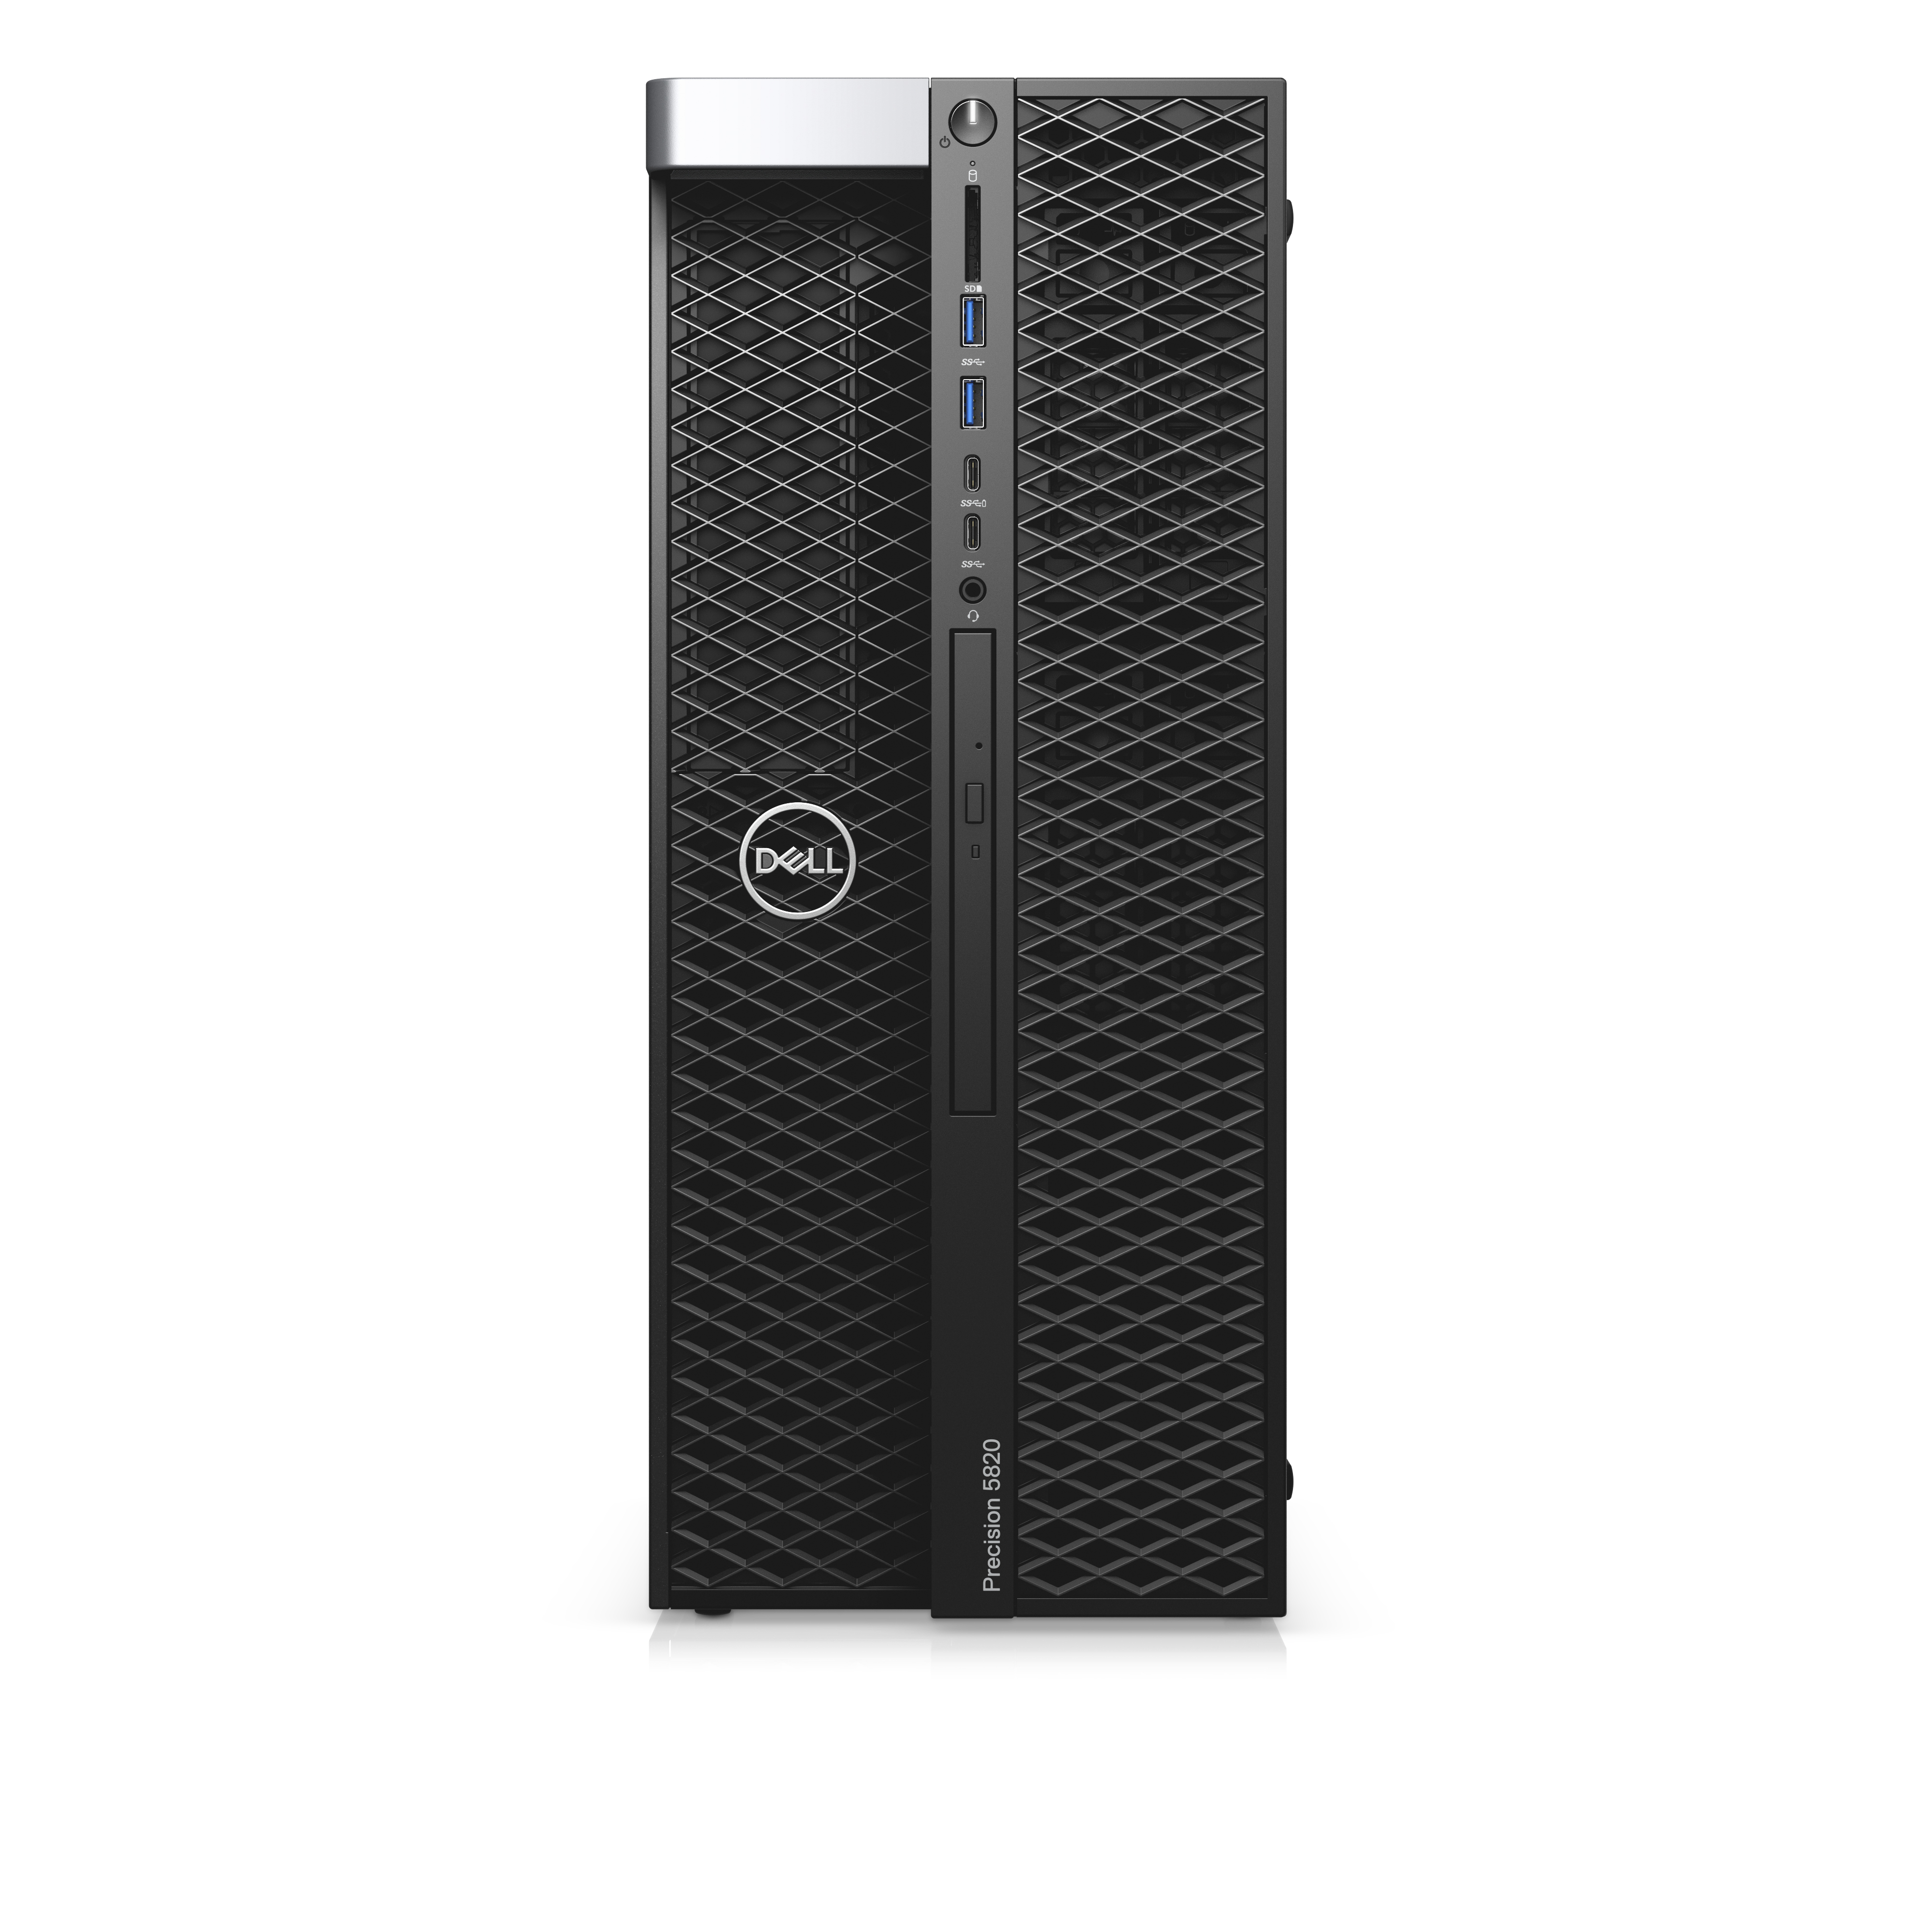 Dell Precision 5820 Tower - Xeon W-2235 - 32GB RAM - 512GB SSD - Win 10 Pro